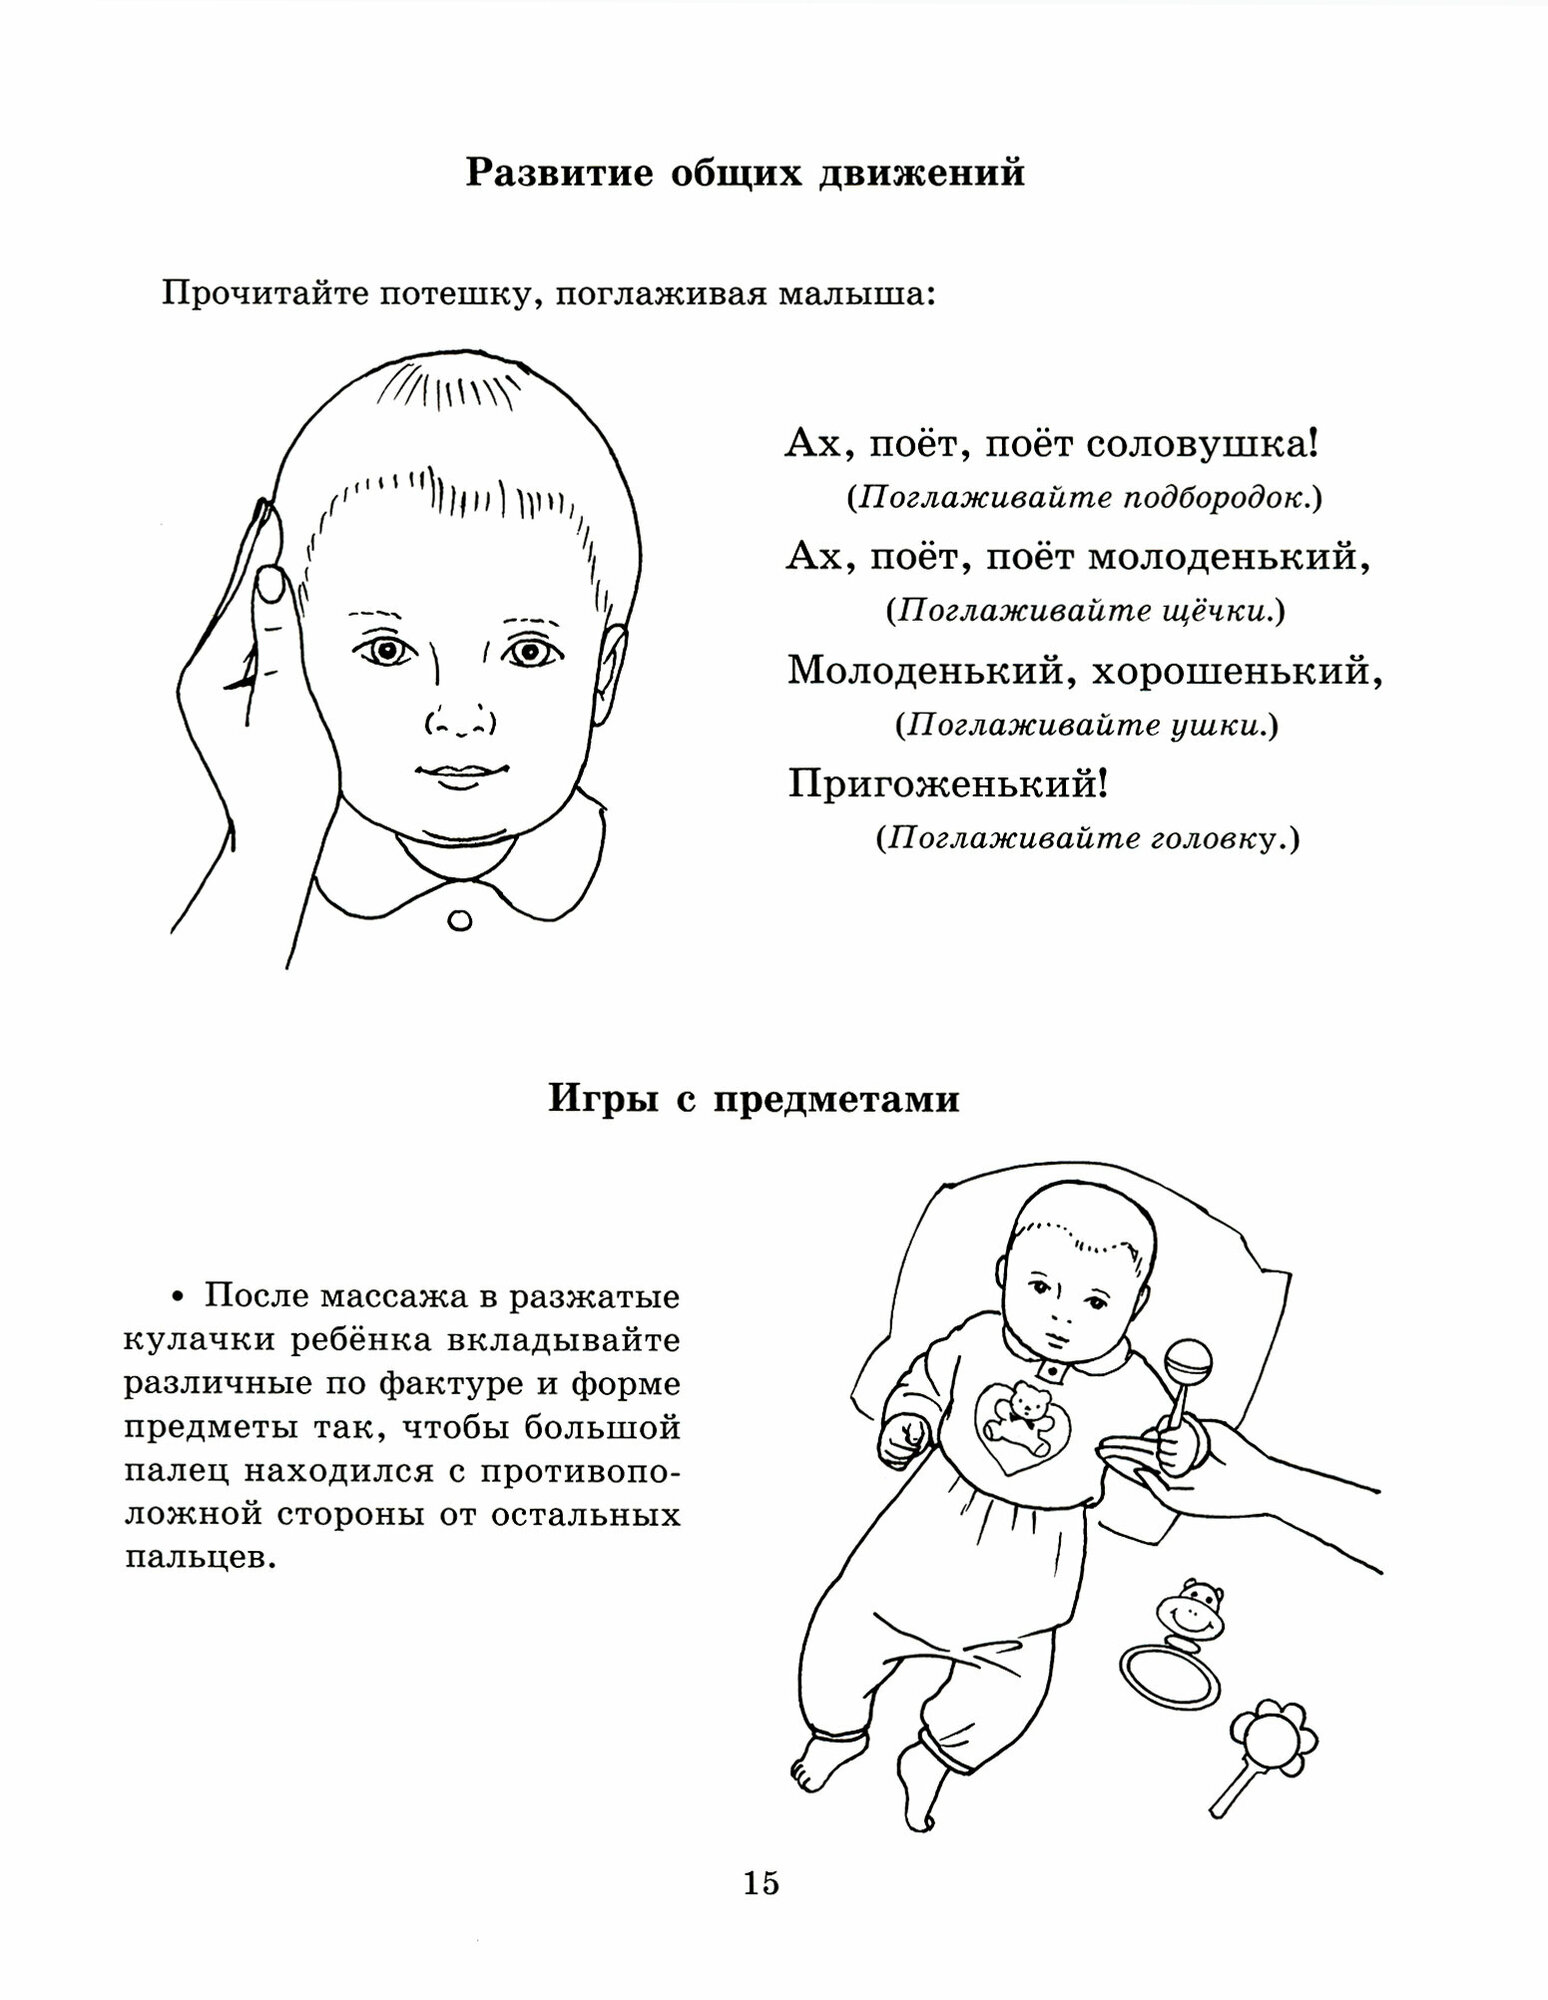 Пальчиковый массаж для малыша от рождения до года - фото №8